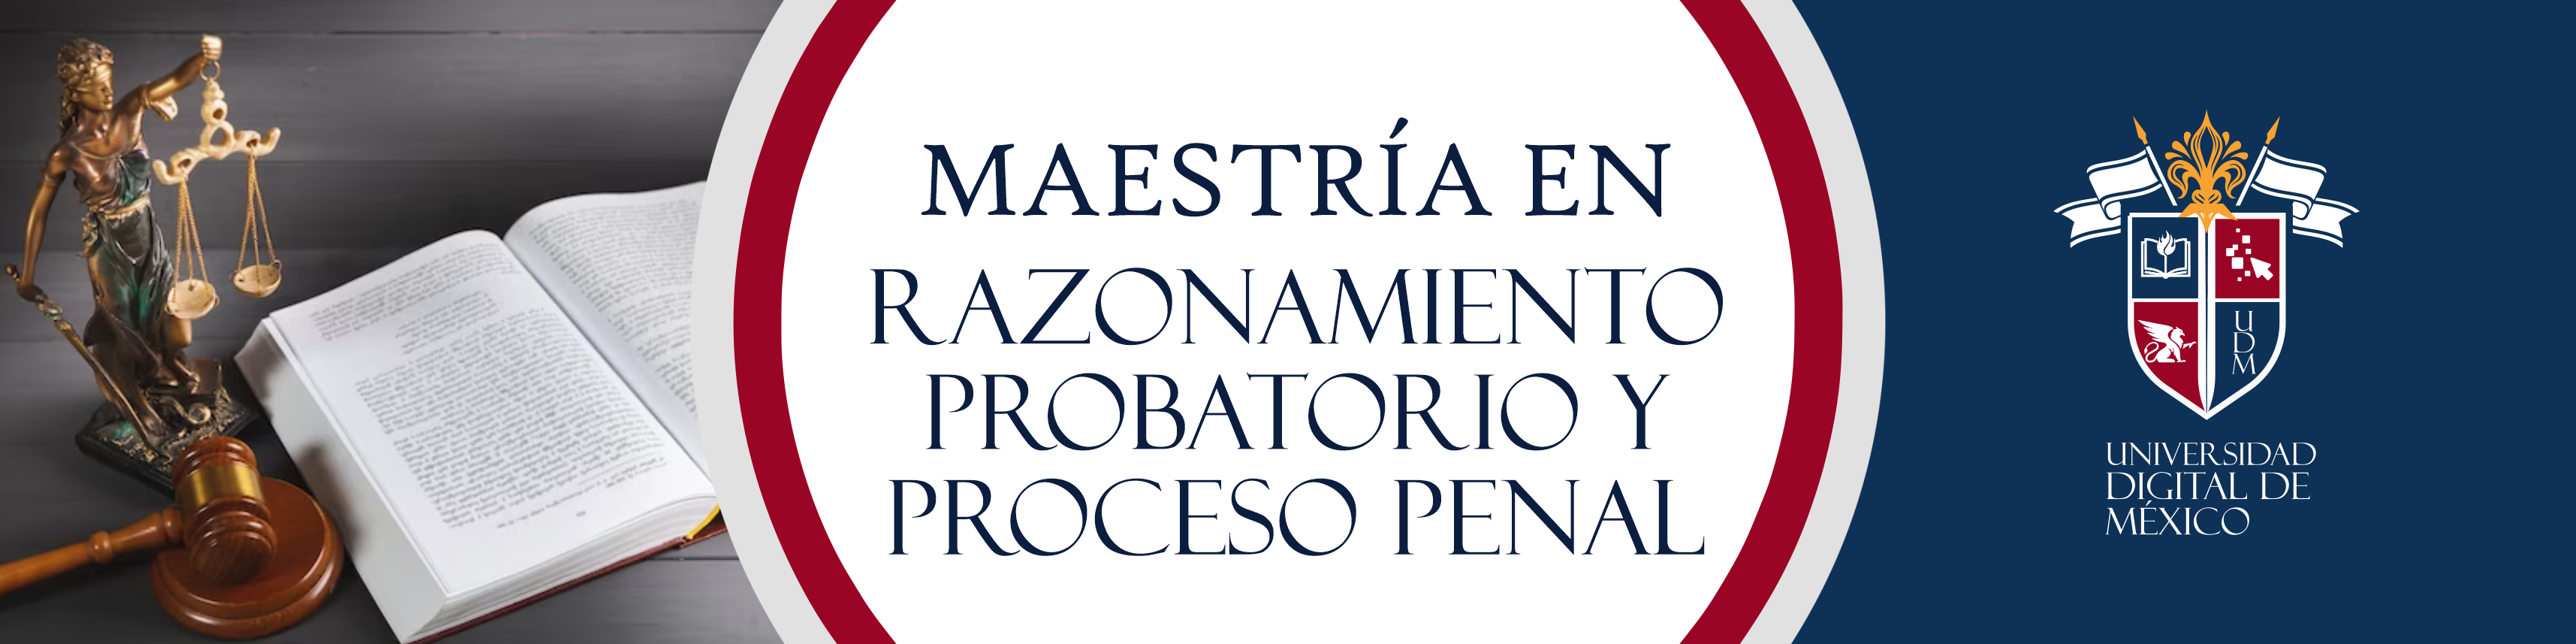 Maestría en Razonamiento Probatorio y Proceso Penal.